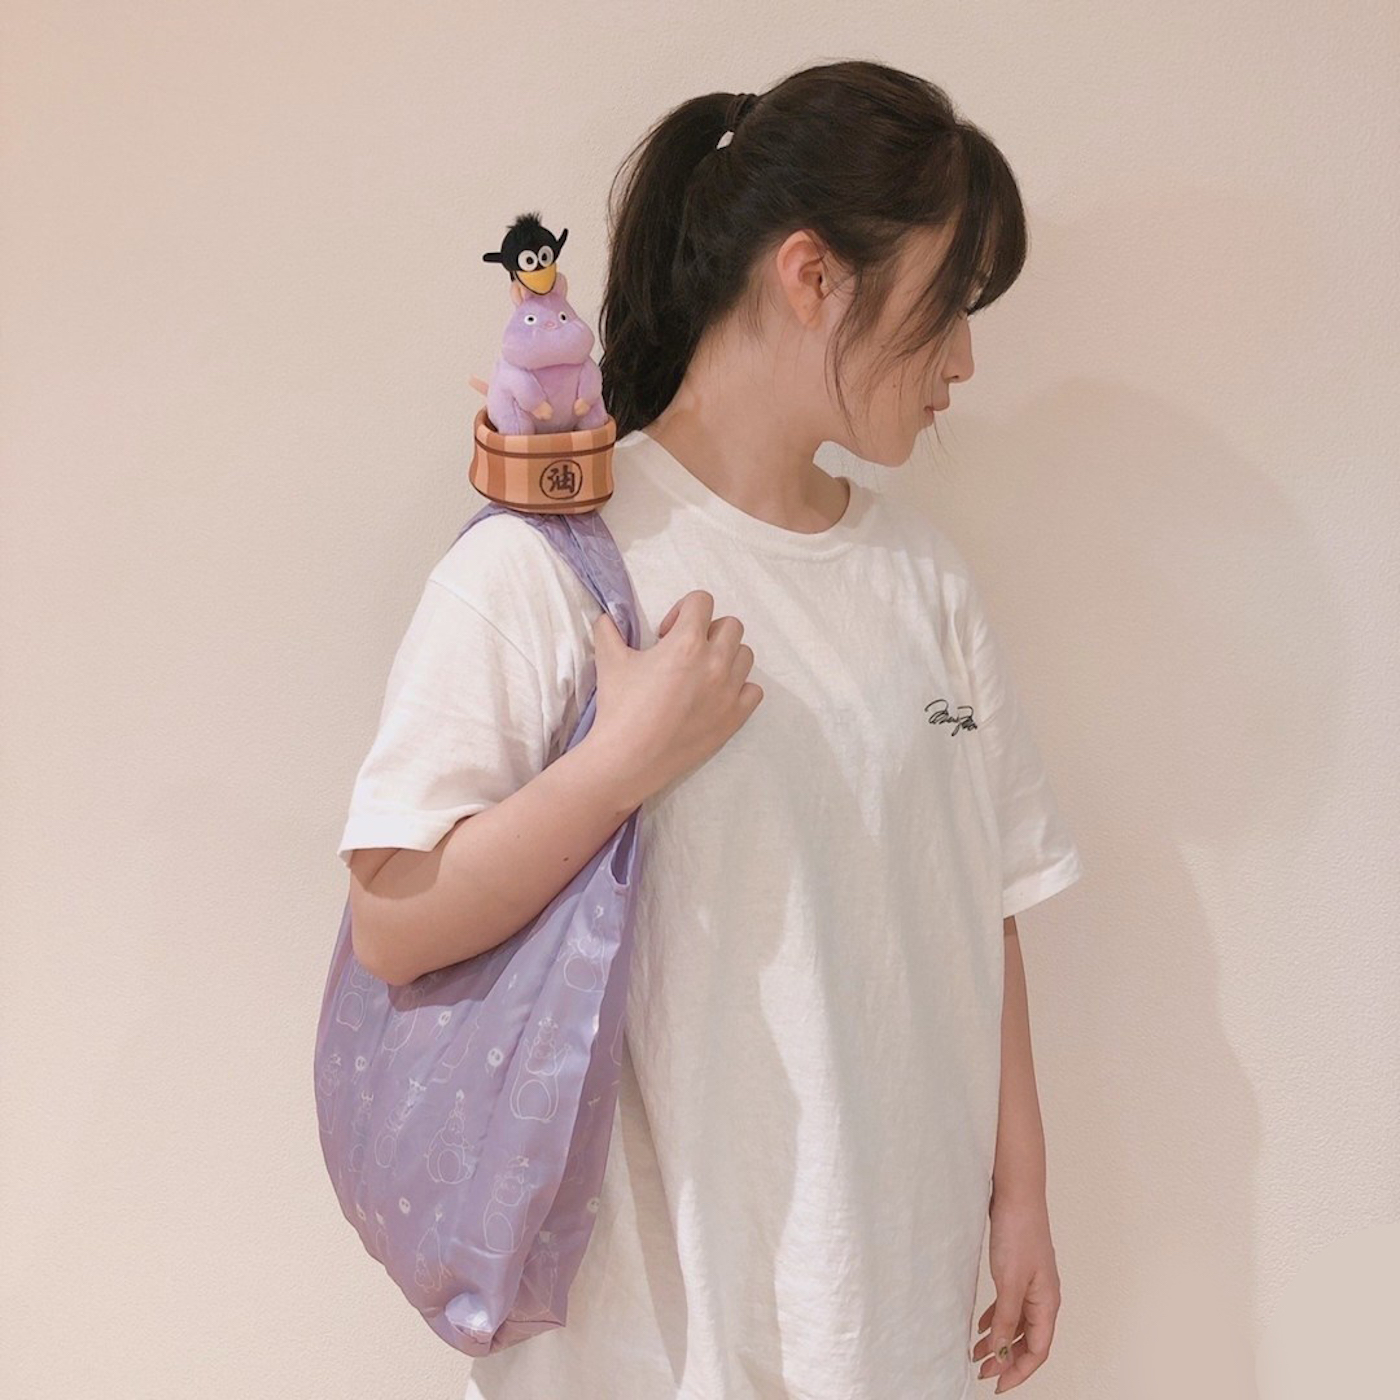 Le Studio Ghibli crée des peluches qui se transforment en sacs réutilisables